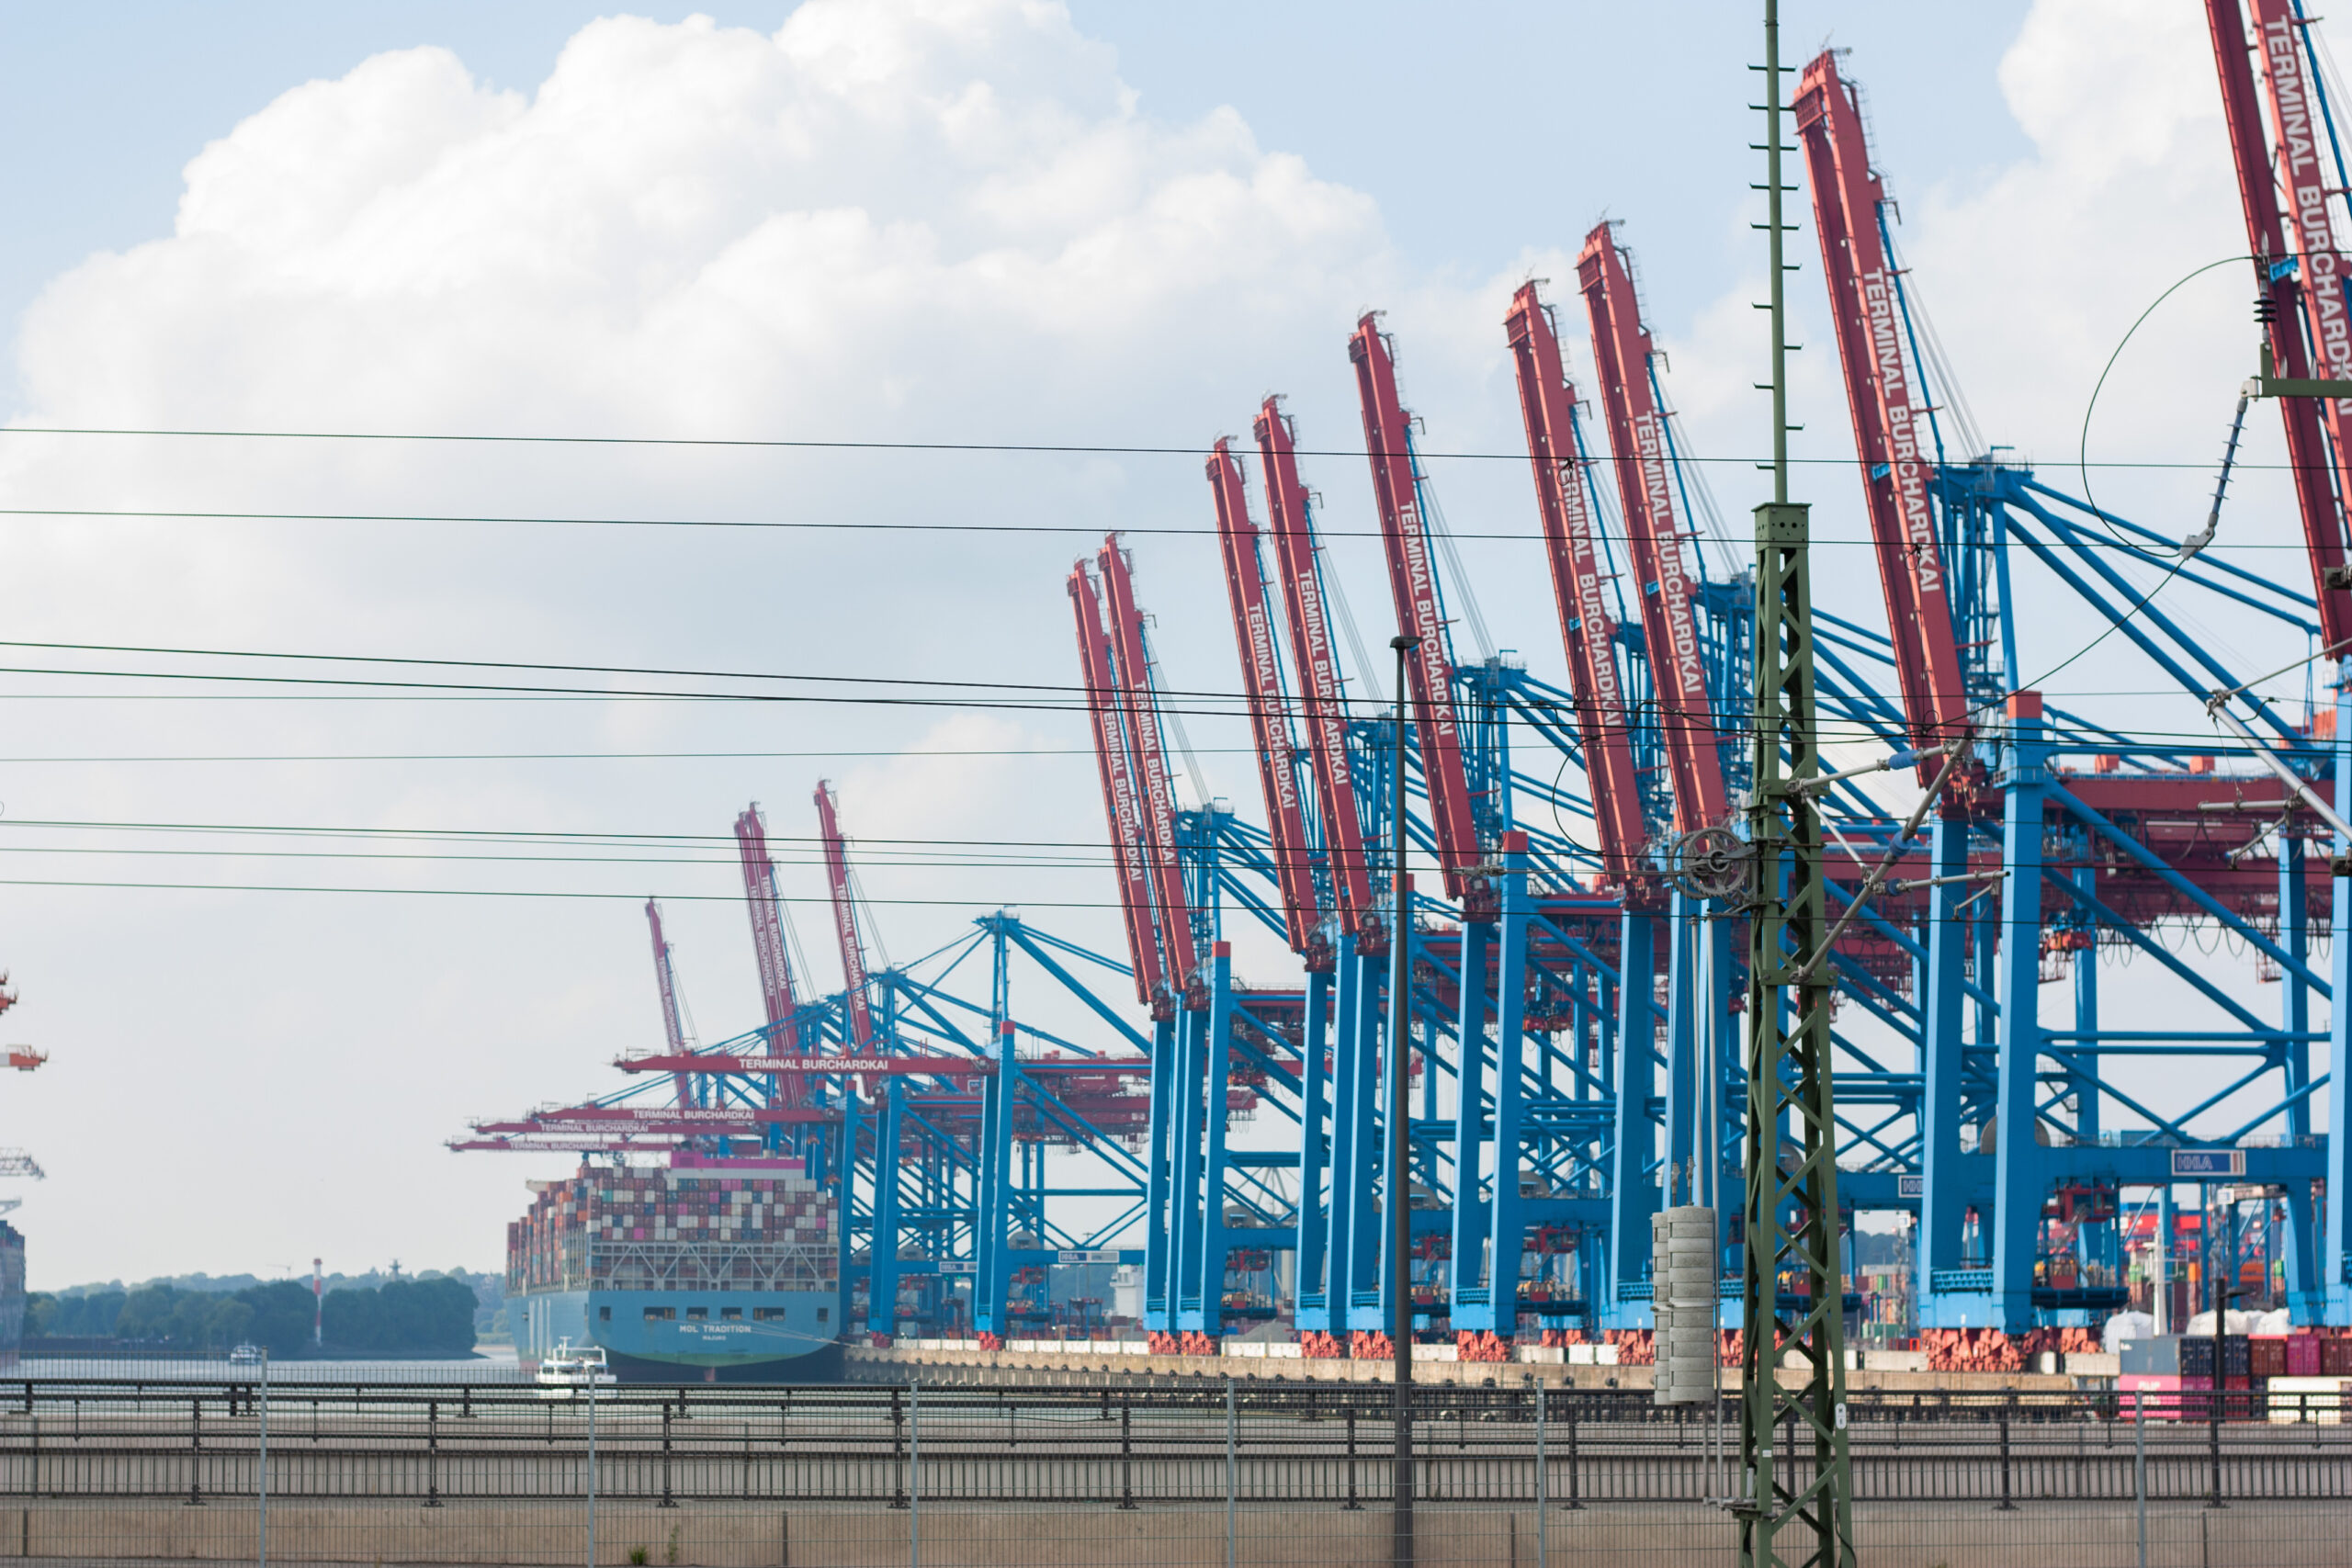 Gegen die Privatisierung des Hamburger Hafens: Hafen unter Kontrolle der Arbeiter:innen!